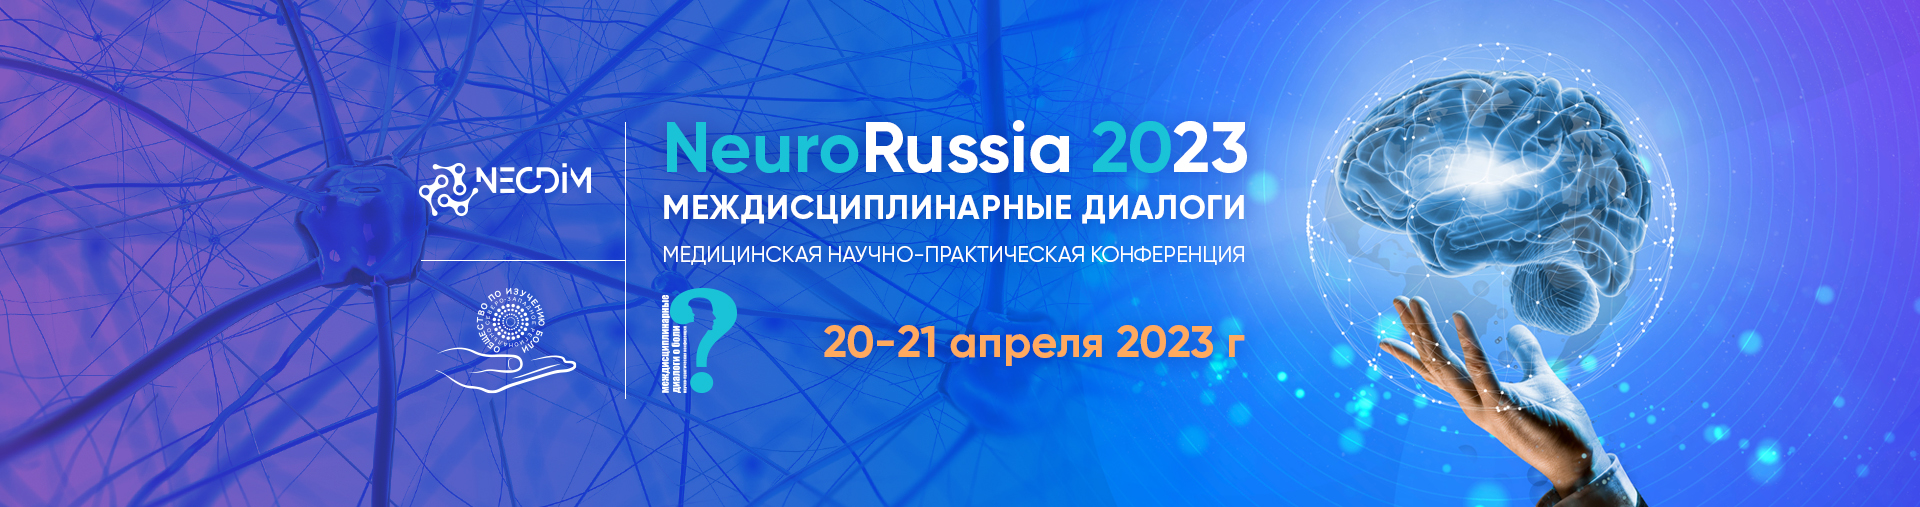 Конференция  «NeuroRussia 2023: Междисциплинарные диалоги» день 1-й @ ОНЛАЙН